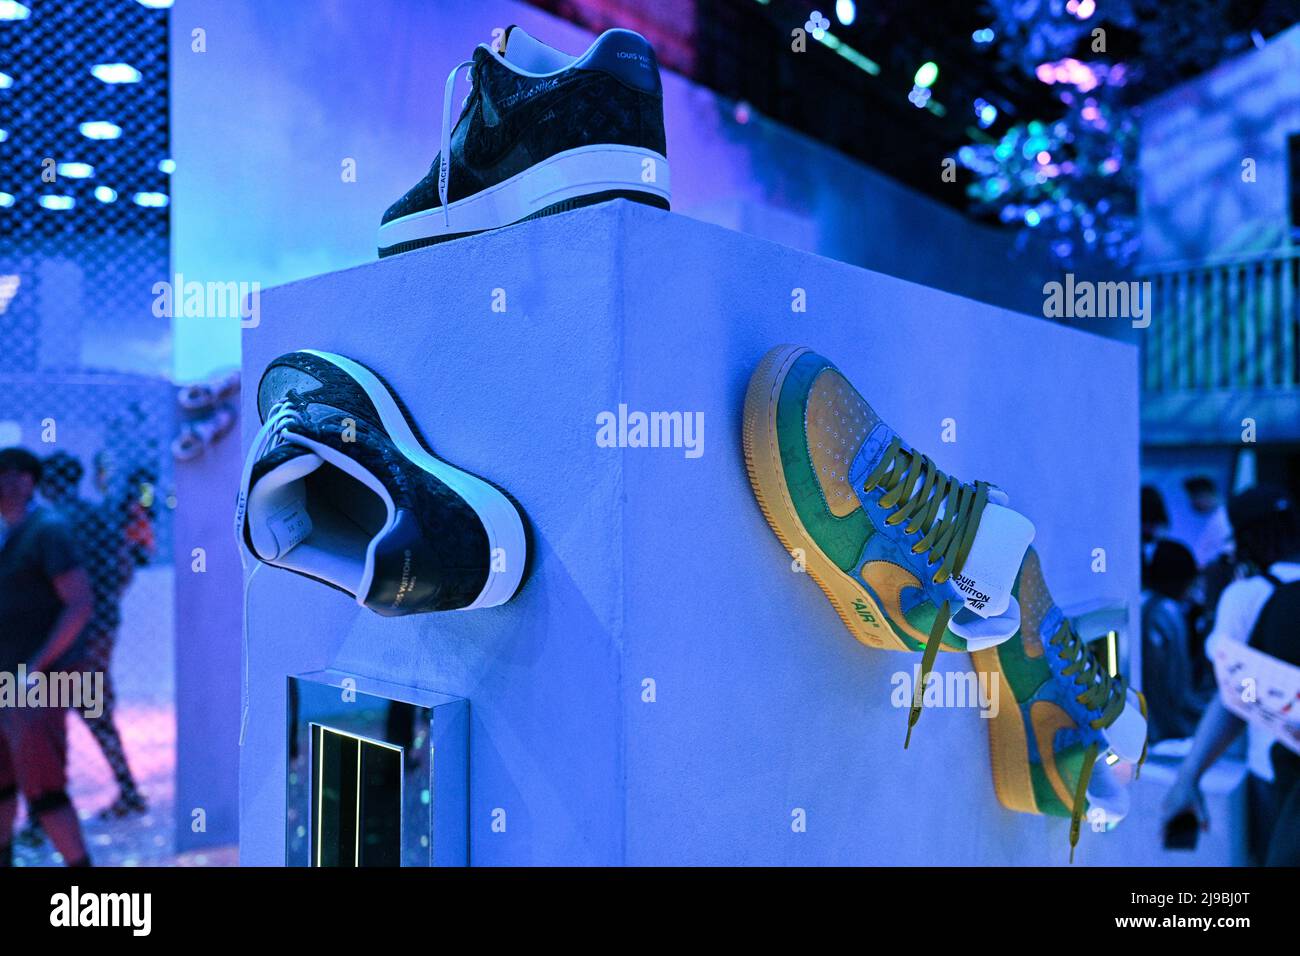 Próximo destino: la expo “Air Force 1” de Nike Y Louis Vuitton en NY